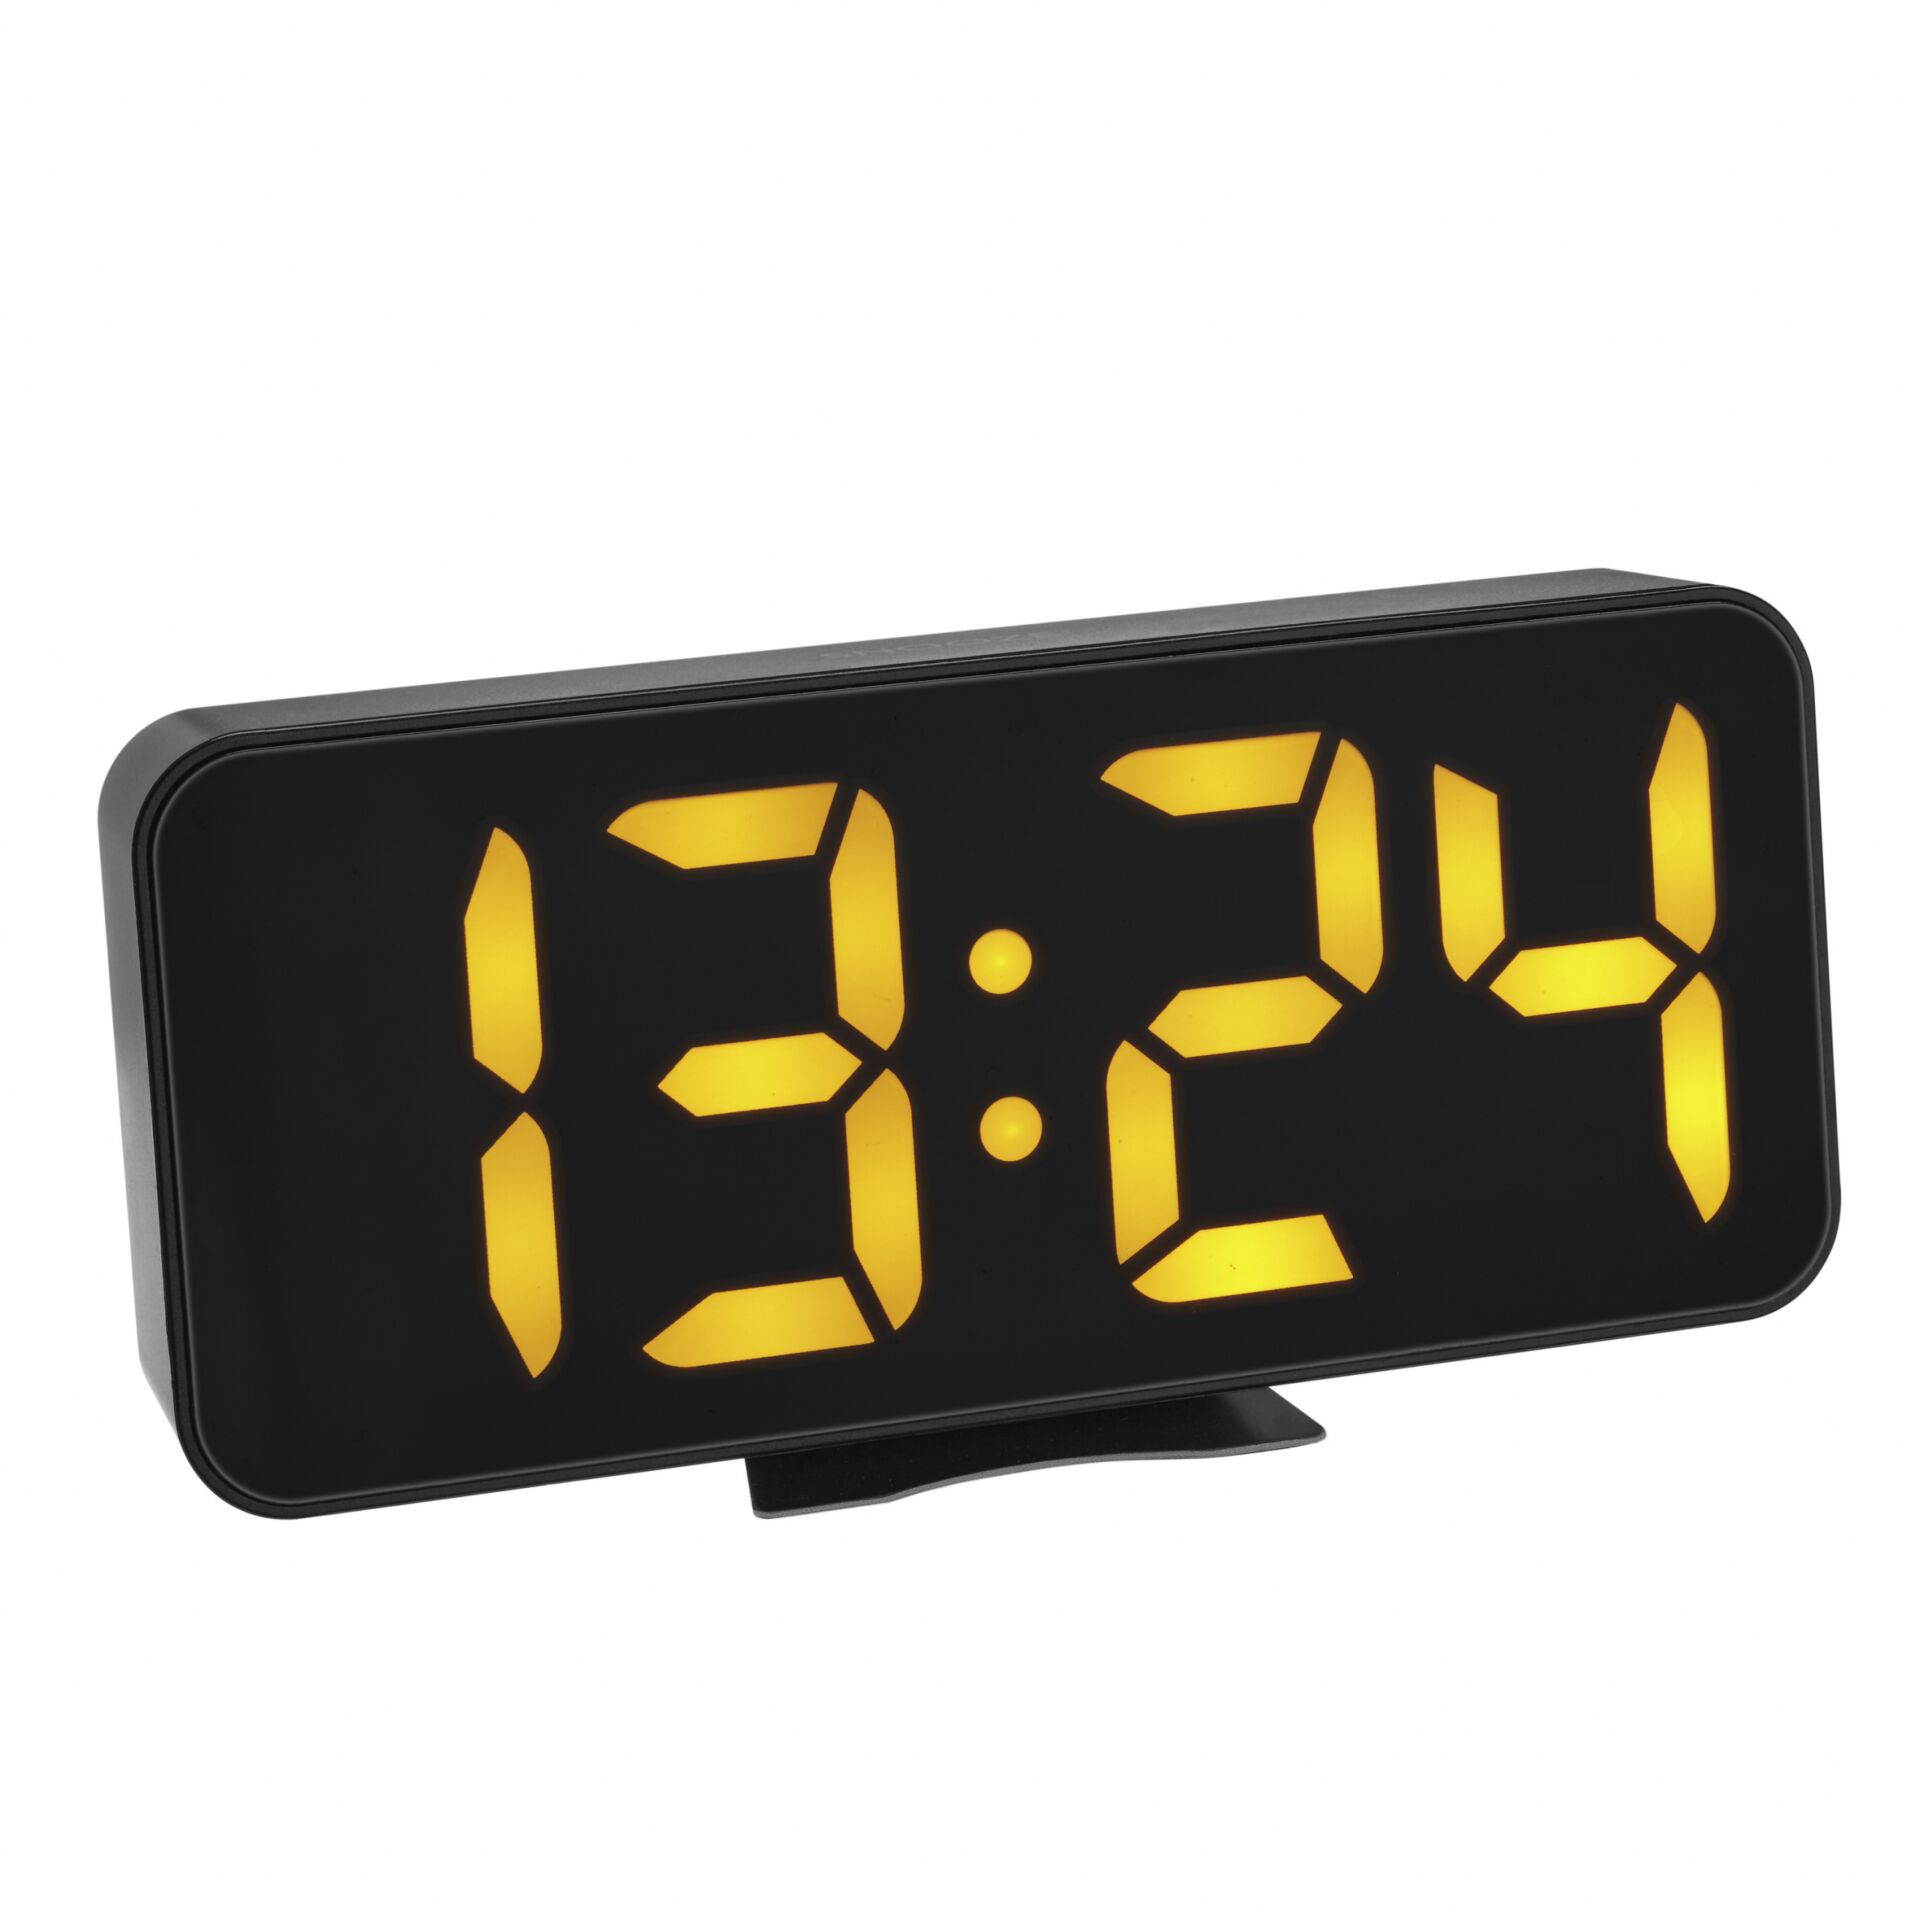 TFA 60.2027.01 Digital Alarm Clock with LED Luminous Digits